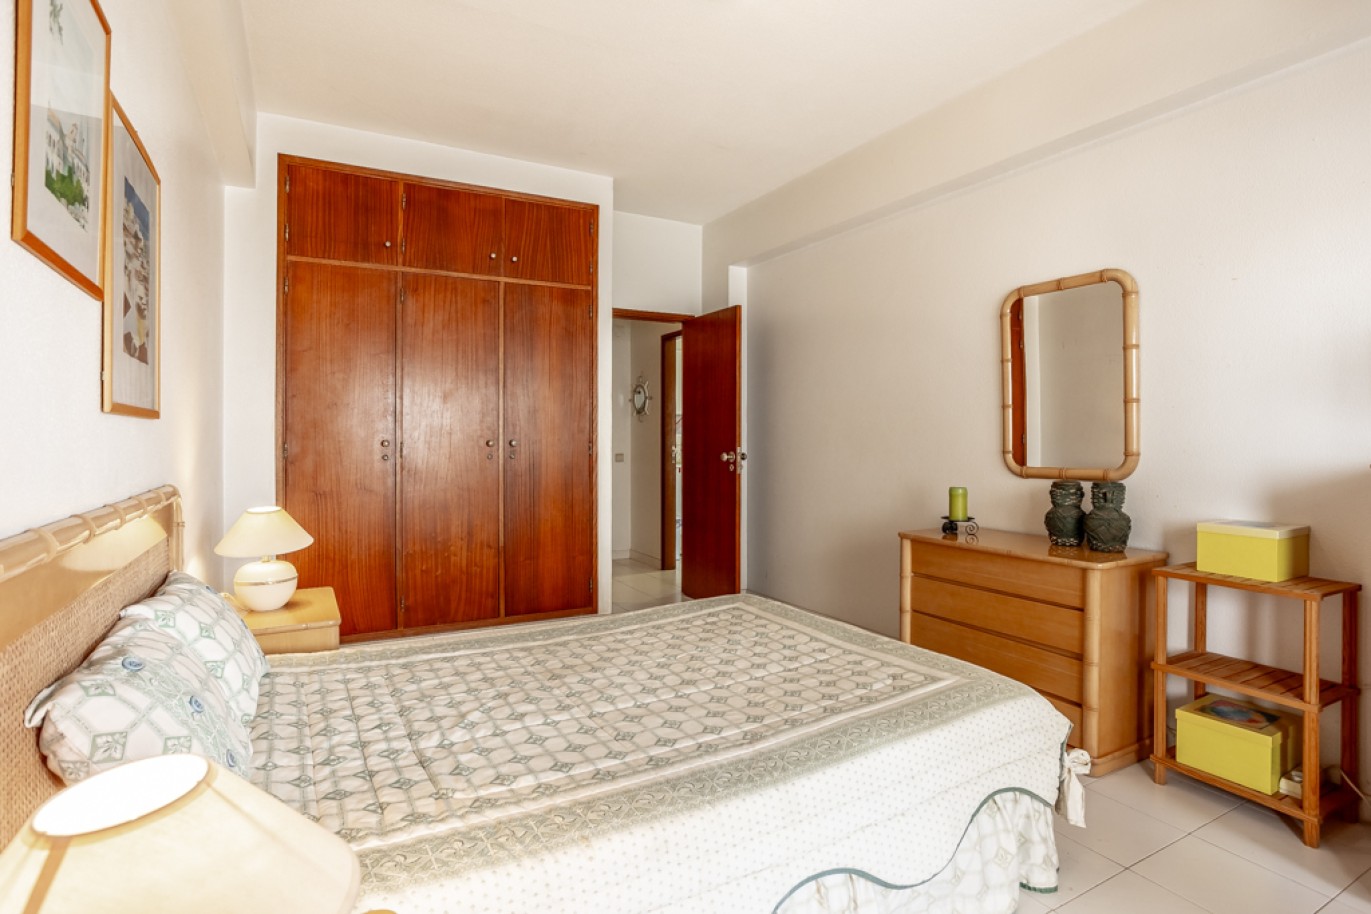 Apartamento com 1+1 quartos, com vista mar, para venda em Porches, Algarve_257041